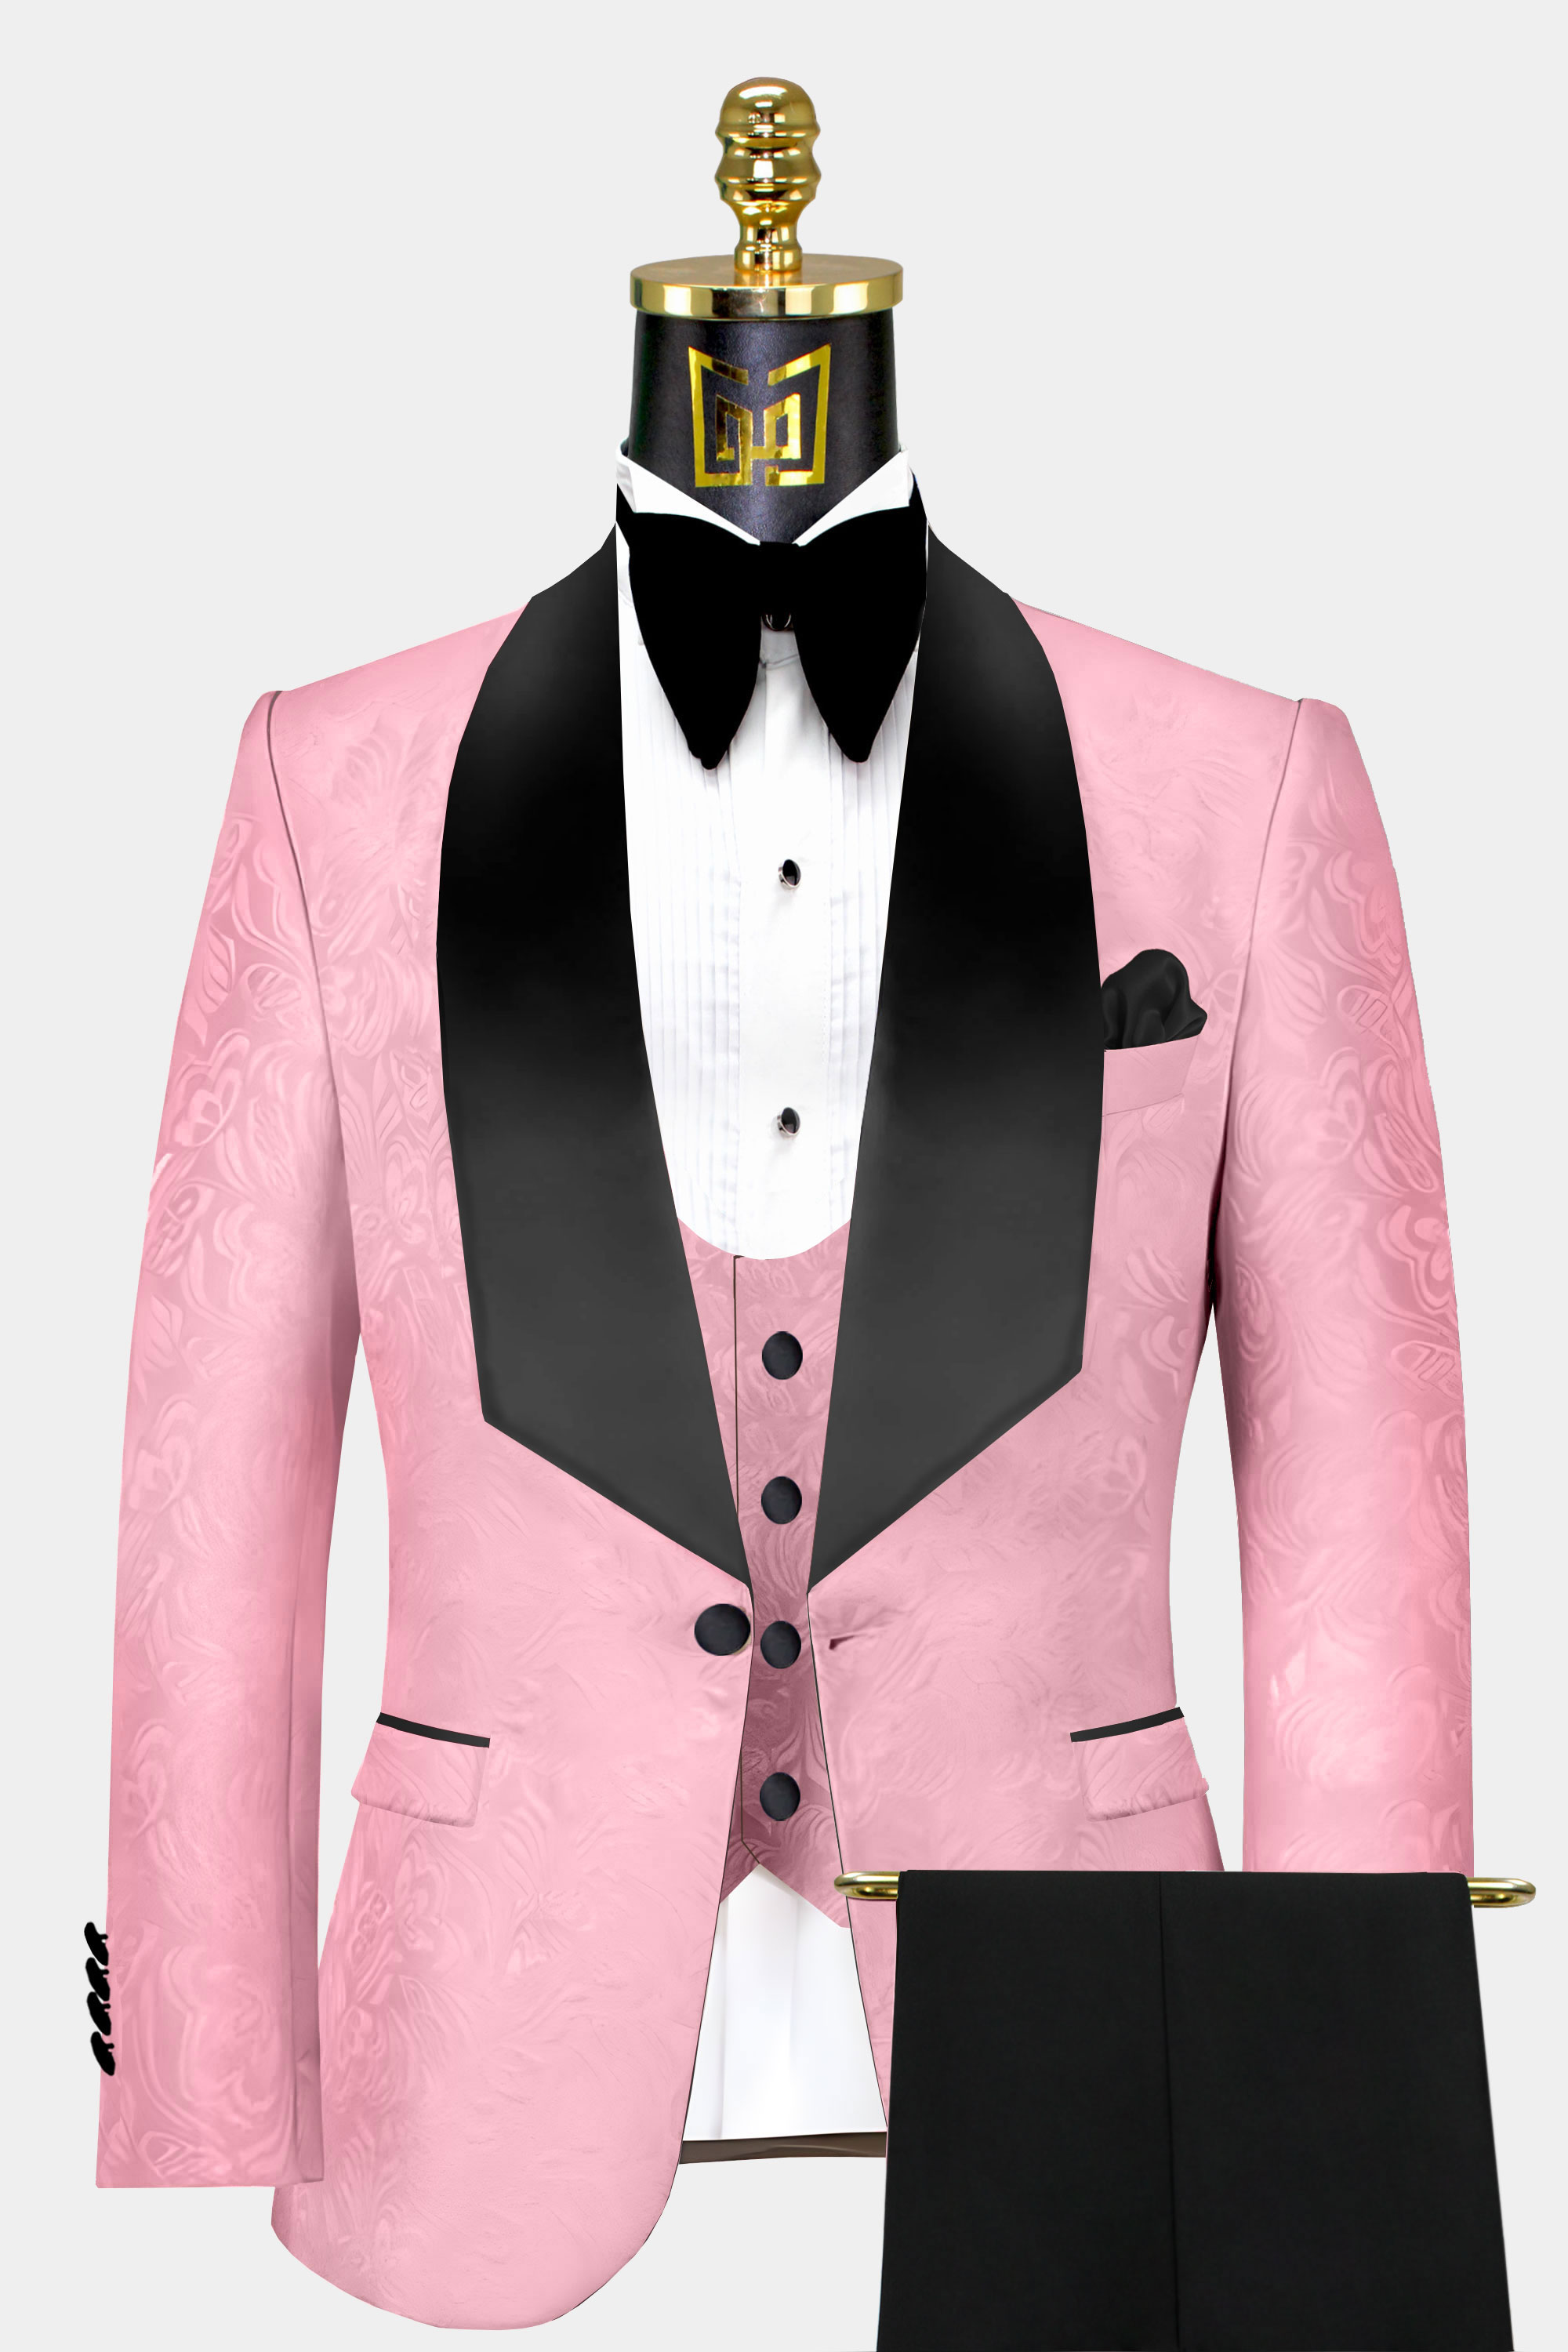 Mens-Pink-and-Black-Tuxedo-Groom-Wedding-Suit-from-Gentlemansguru.com